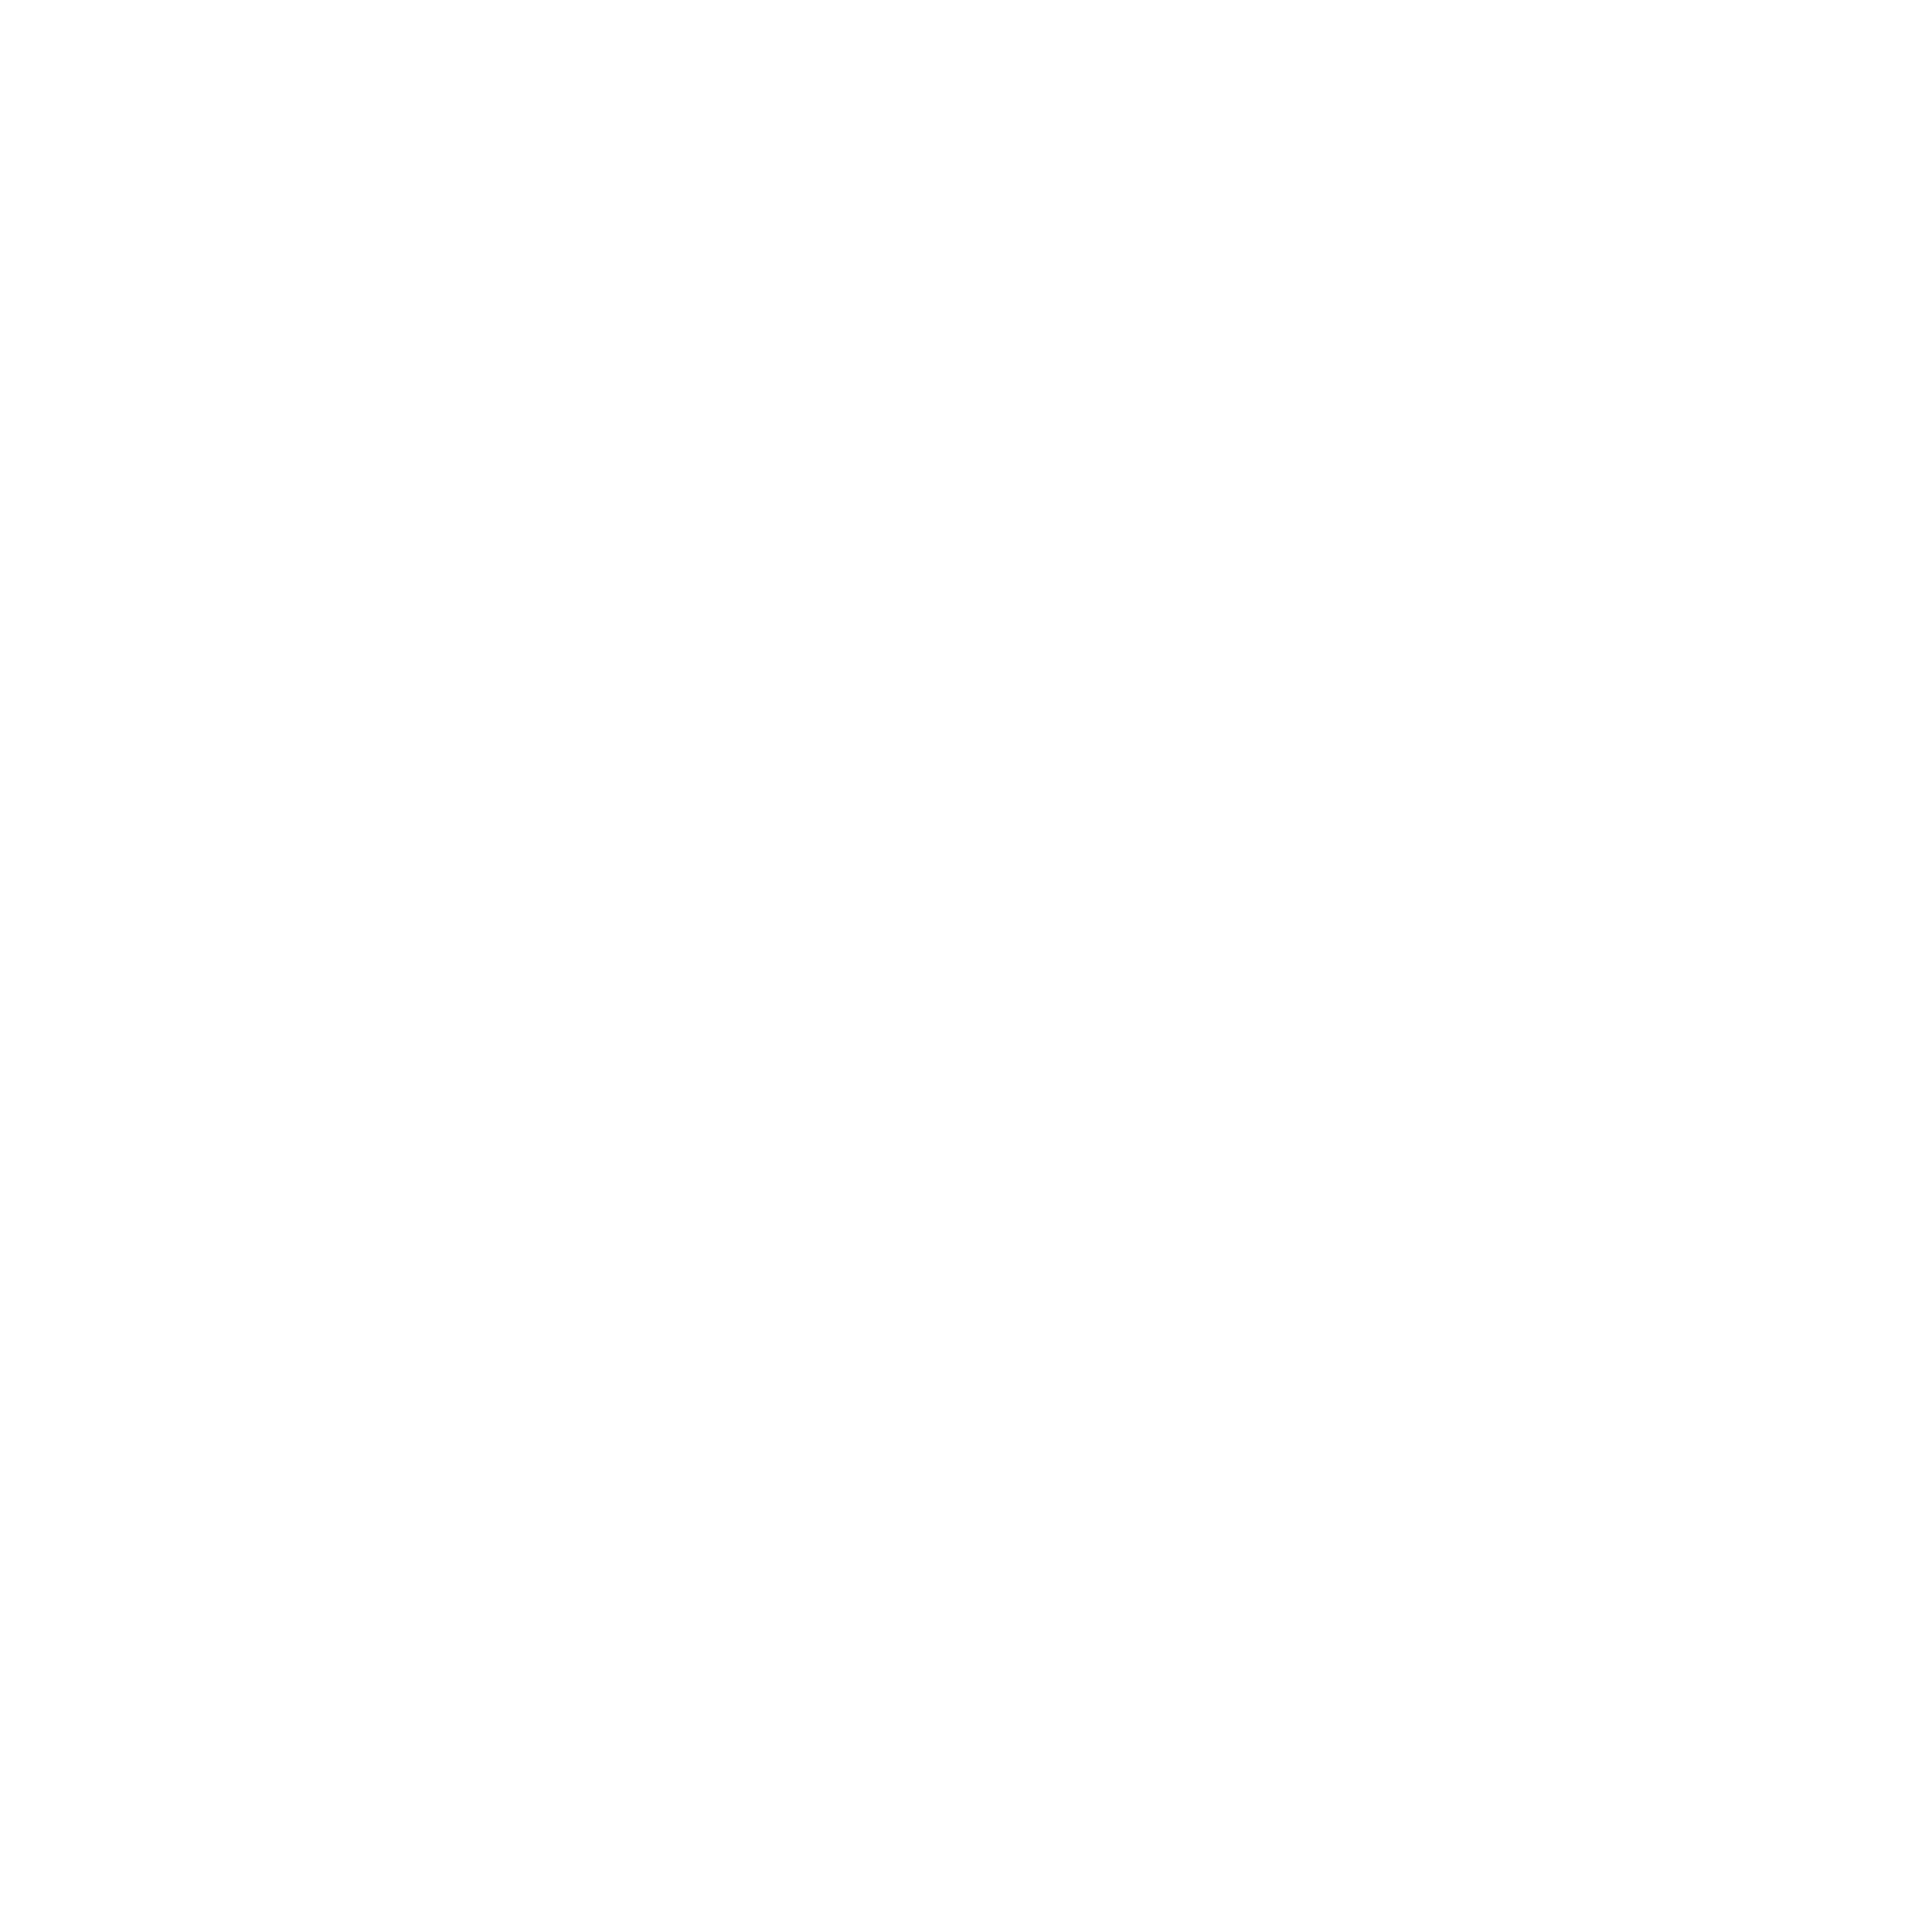 Đi Long Nhong